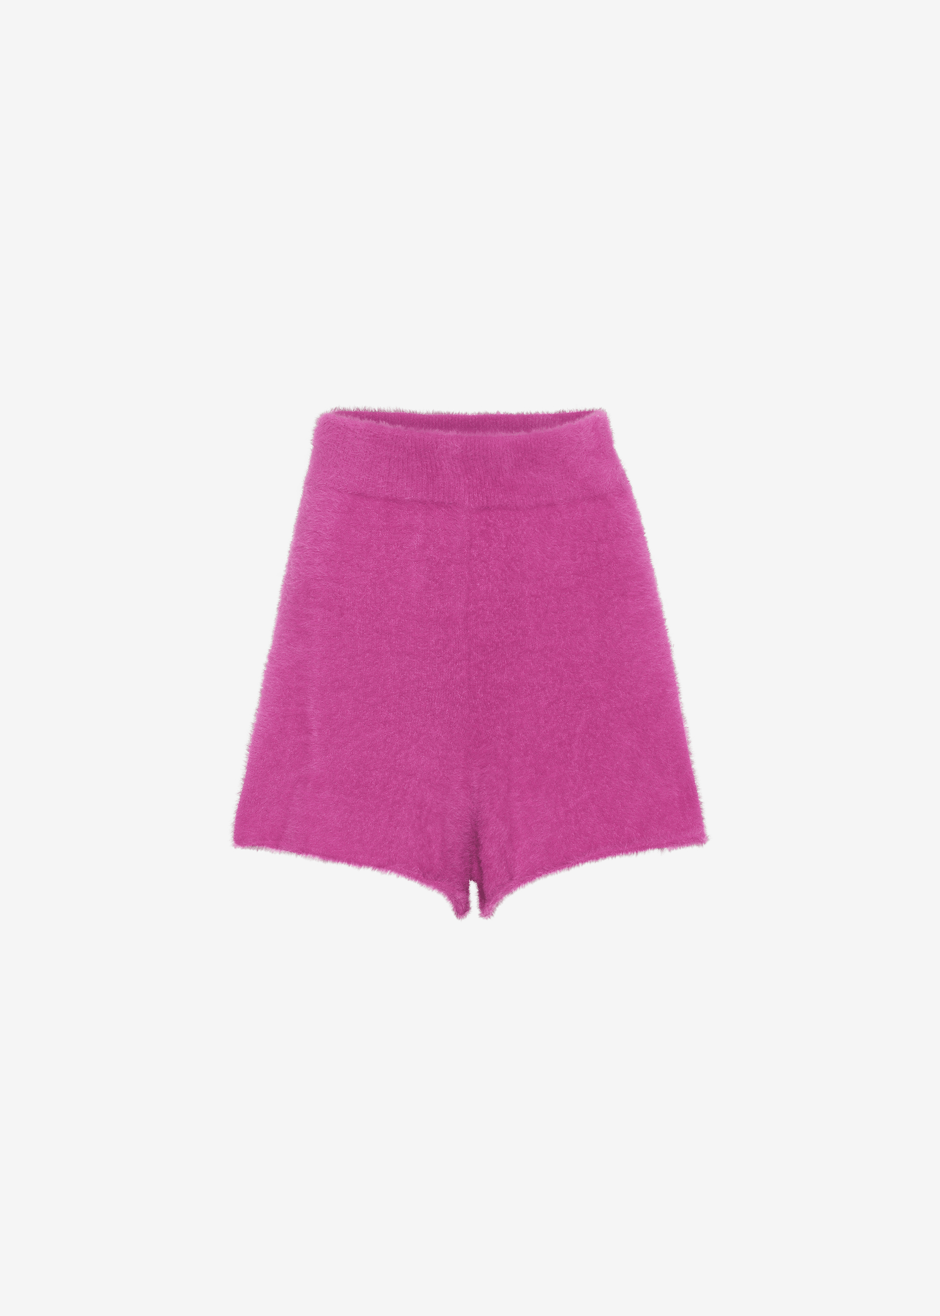 ROTATE Suzi Knit Shorts - Very Berry Pink - 5